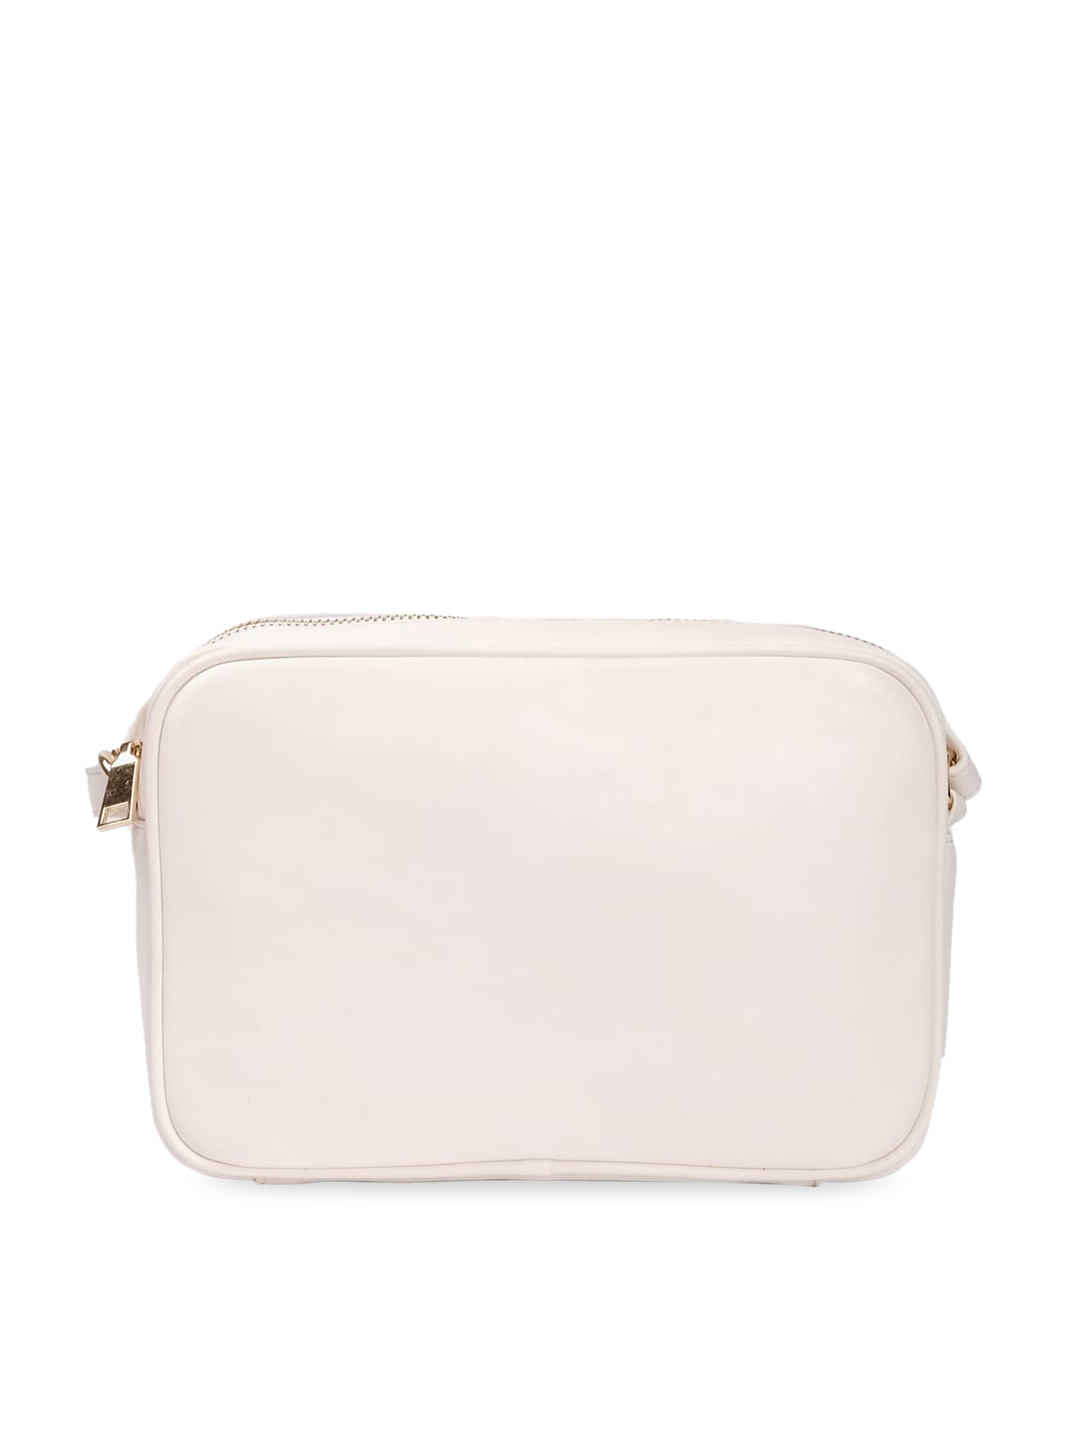 Buy FOREVER 21 White PU Structured Sling Bag - Handbags for Women ...